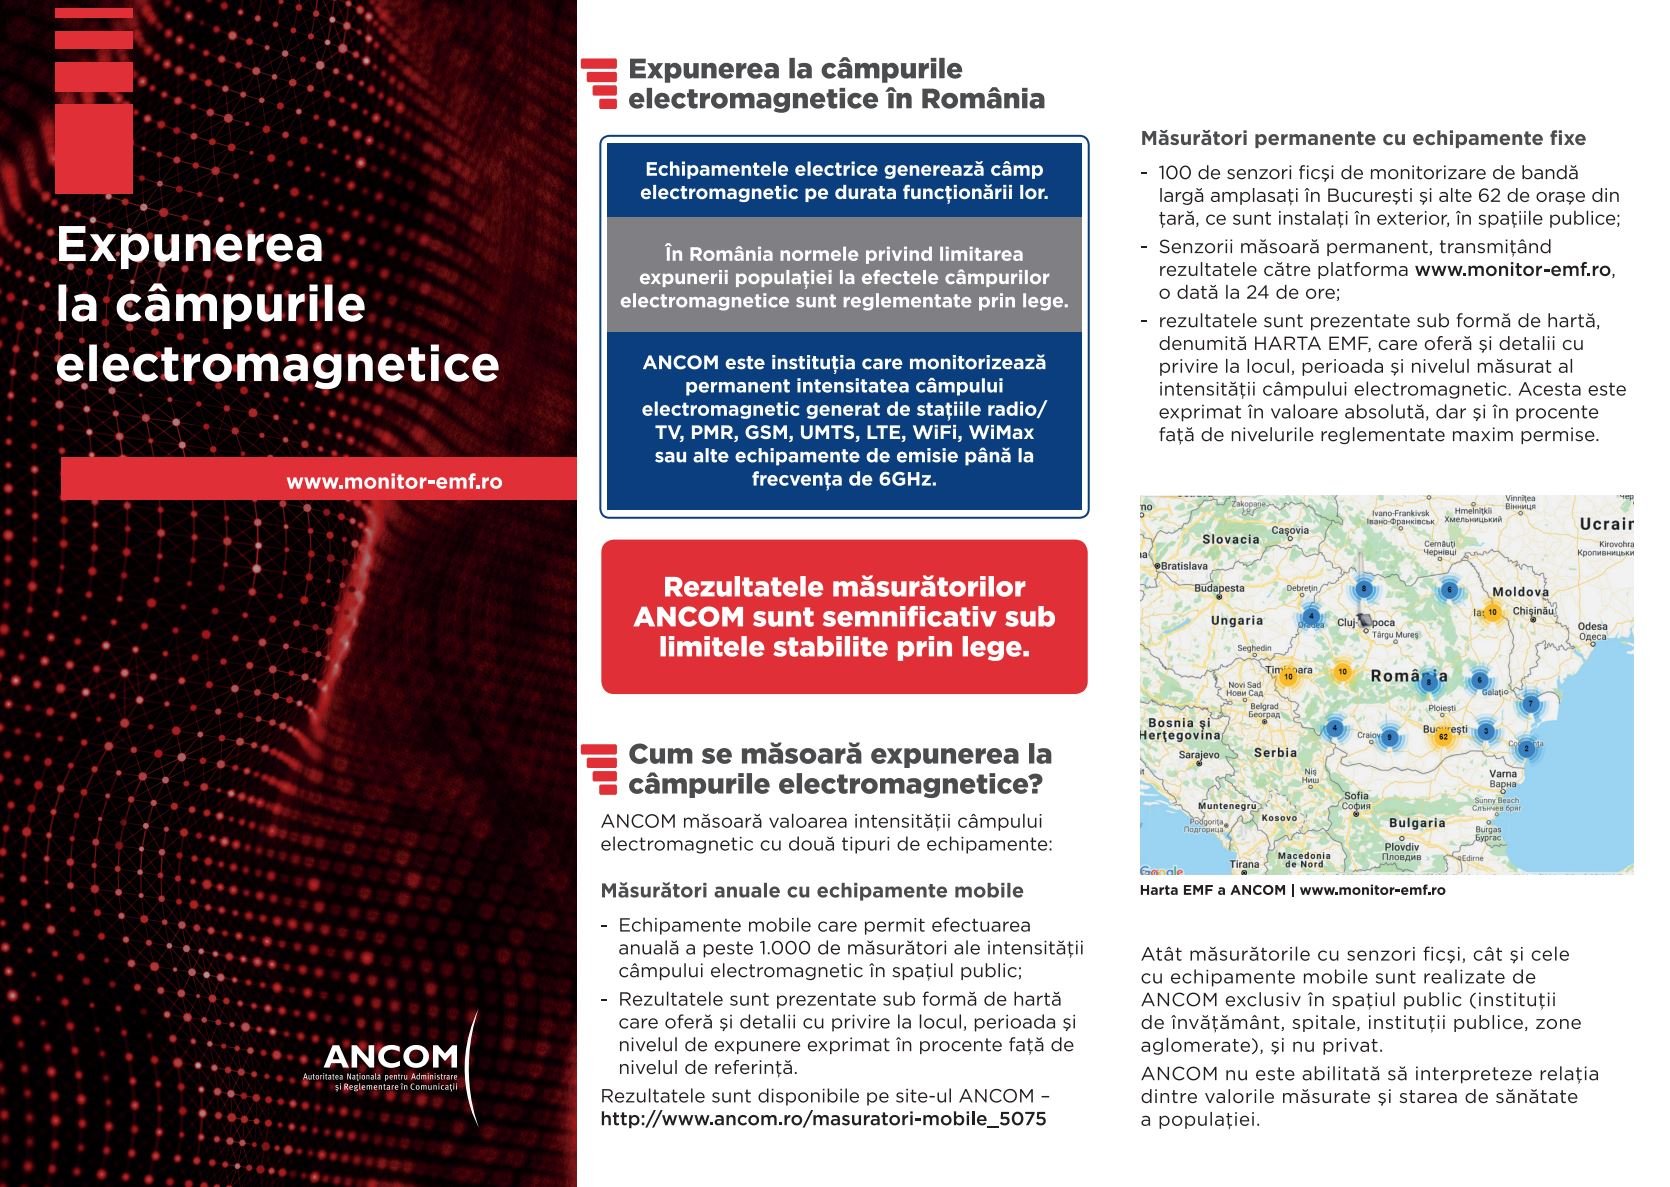 Digi Mobile. Telekom, Vodafone, Orange ancom emf radiation leaflet